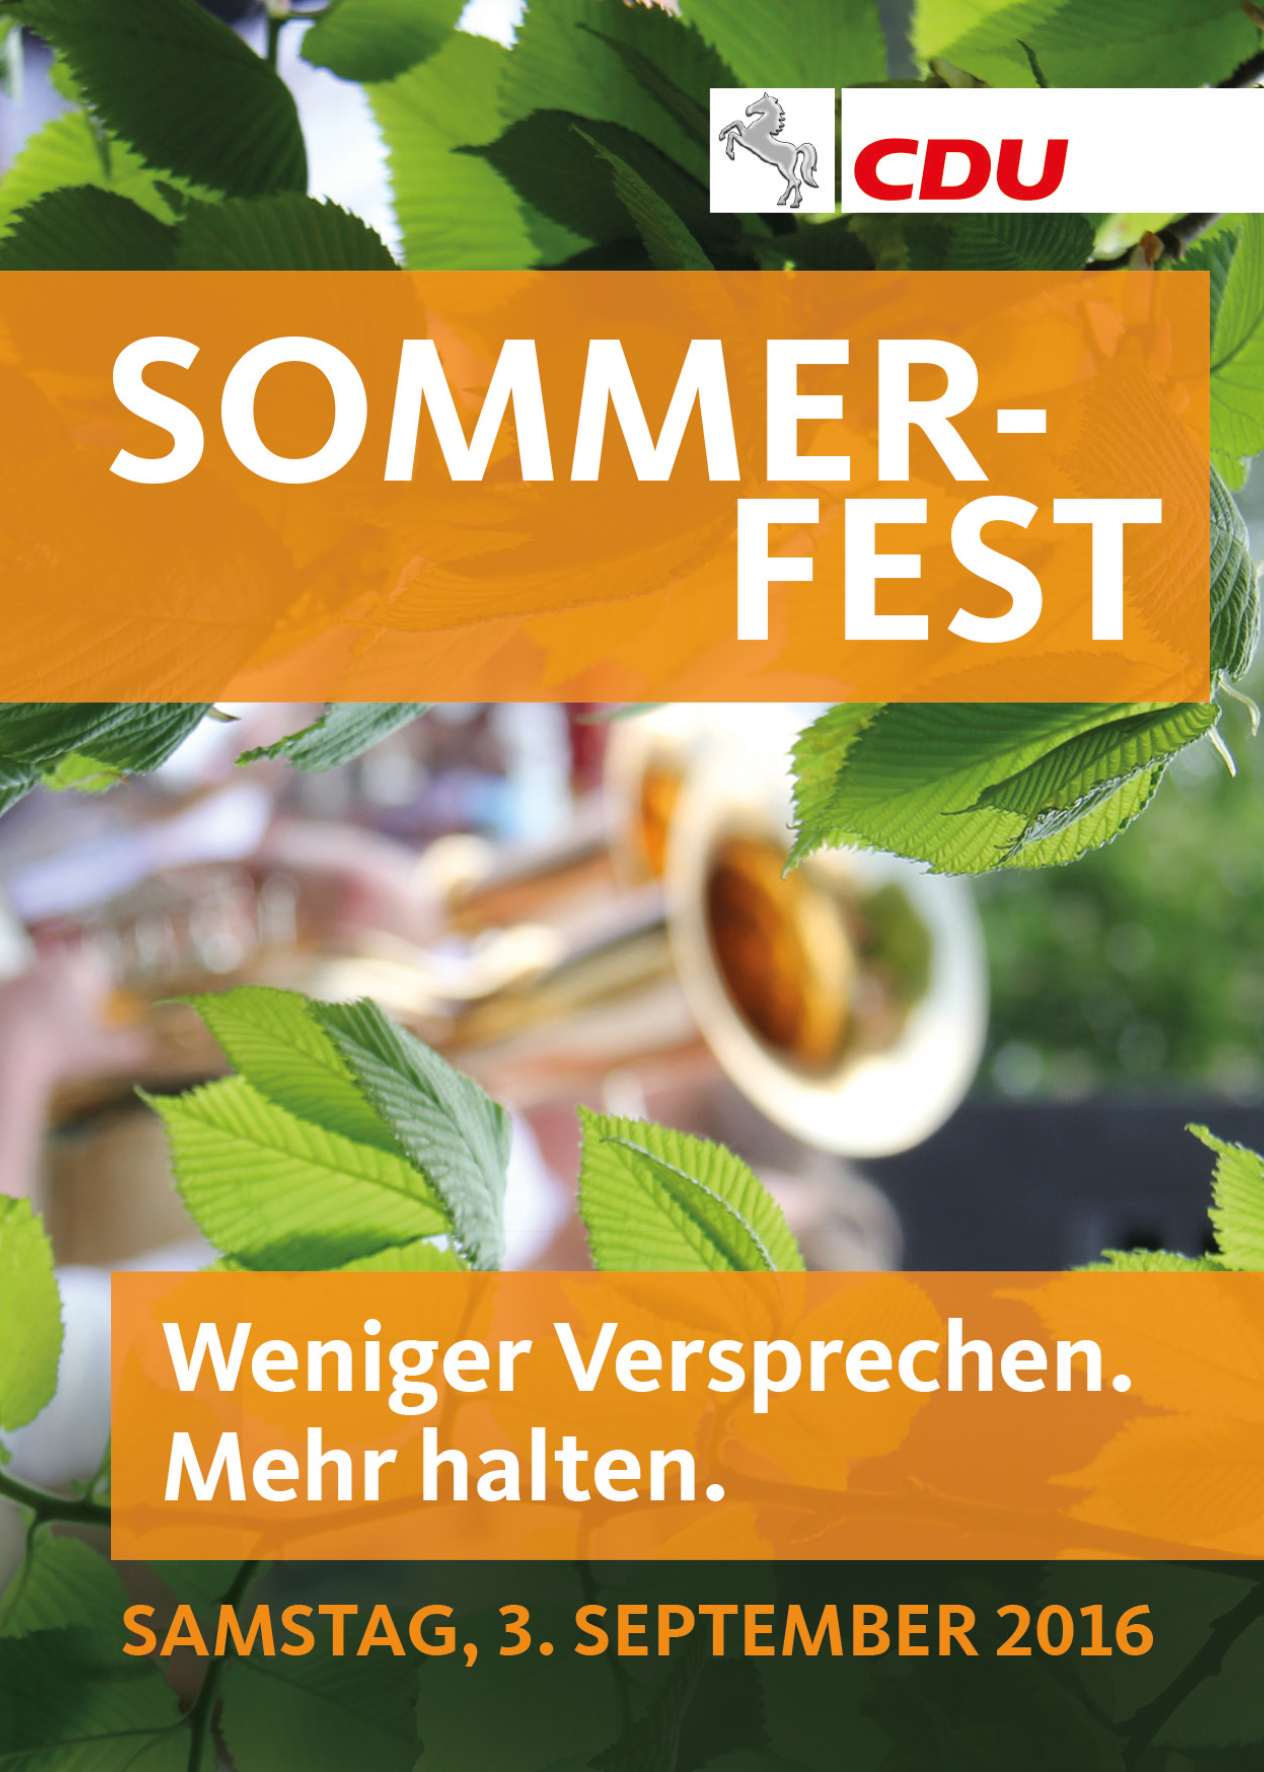 Sommerfest CDU